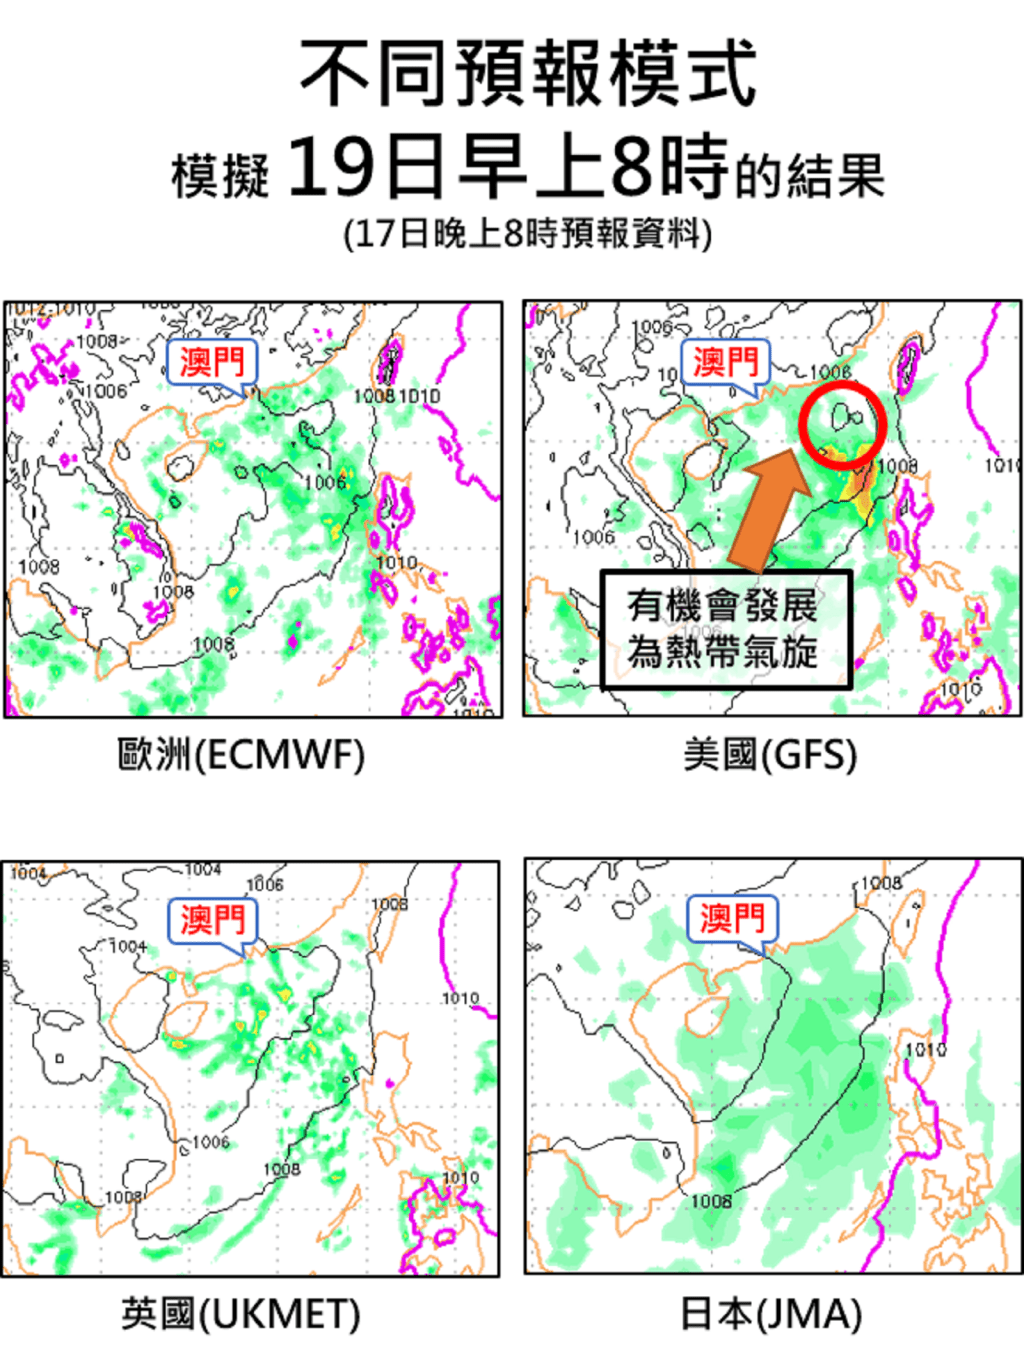 ECMWF(左上)、GFS(右上)、UKMET(左下)及JMA(右下) 海平面气压及雨量预报图。澳门气象局图片